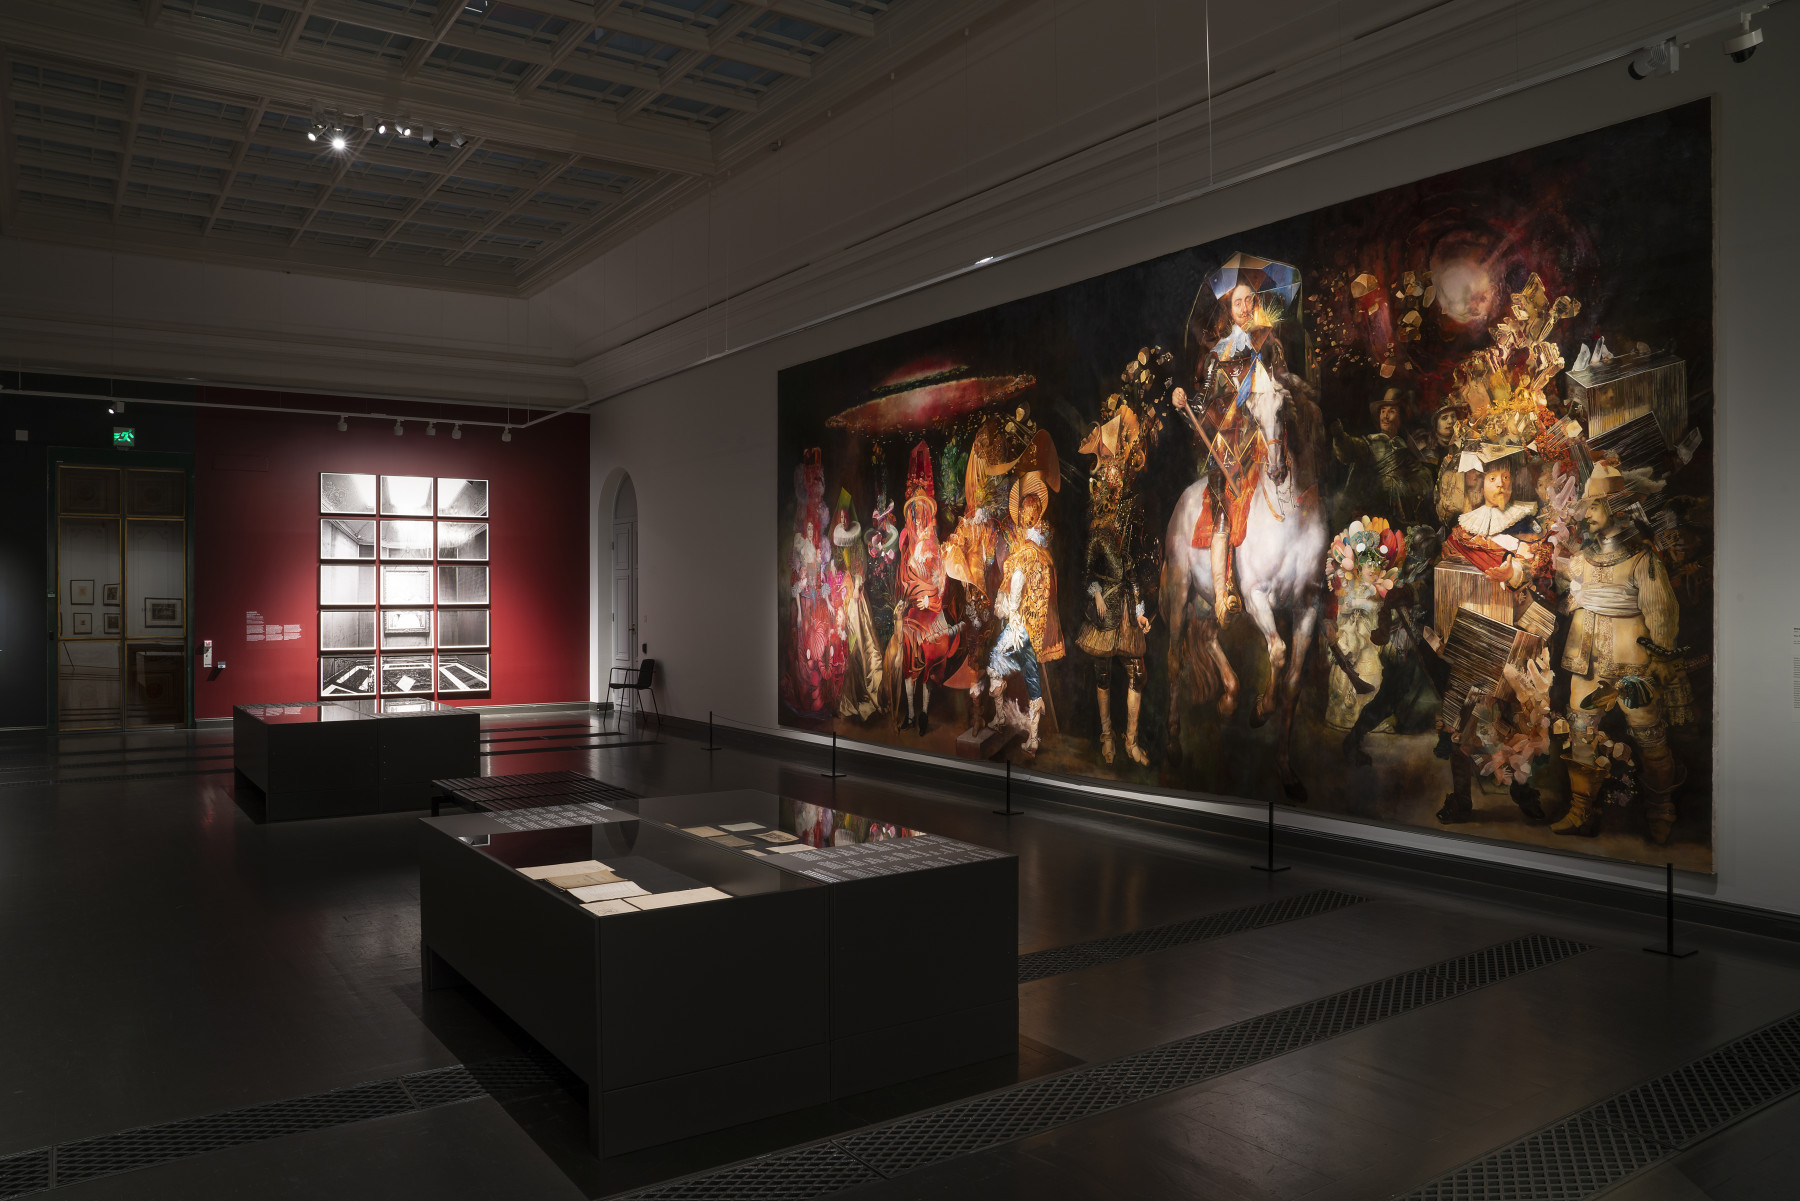 Wolfe von Lenkiewicz, The School of Night Installation | Ateneum Museum, 2020